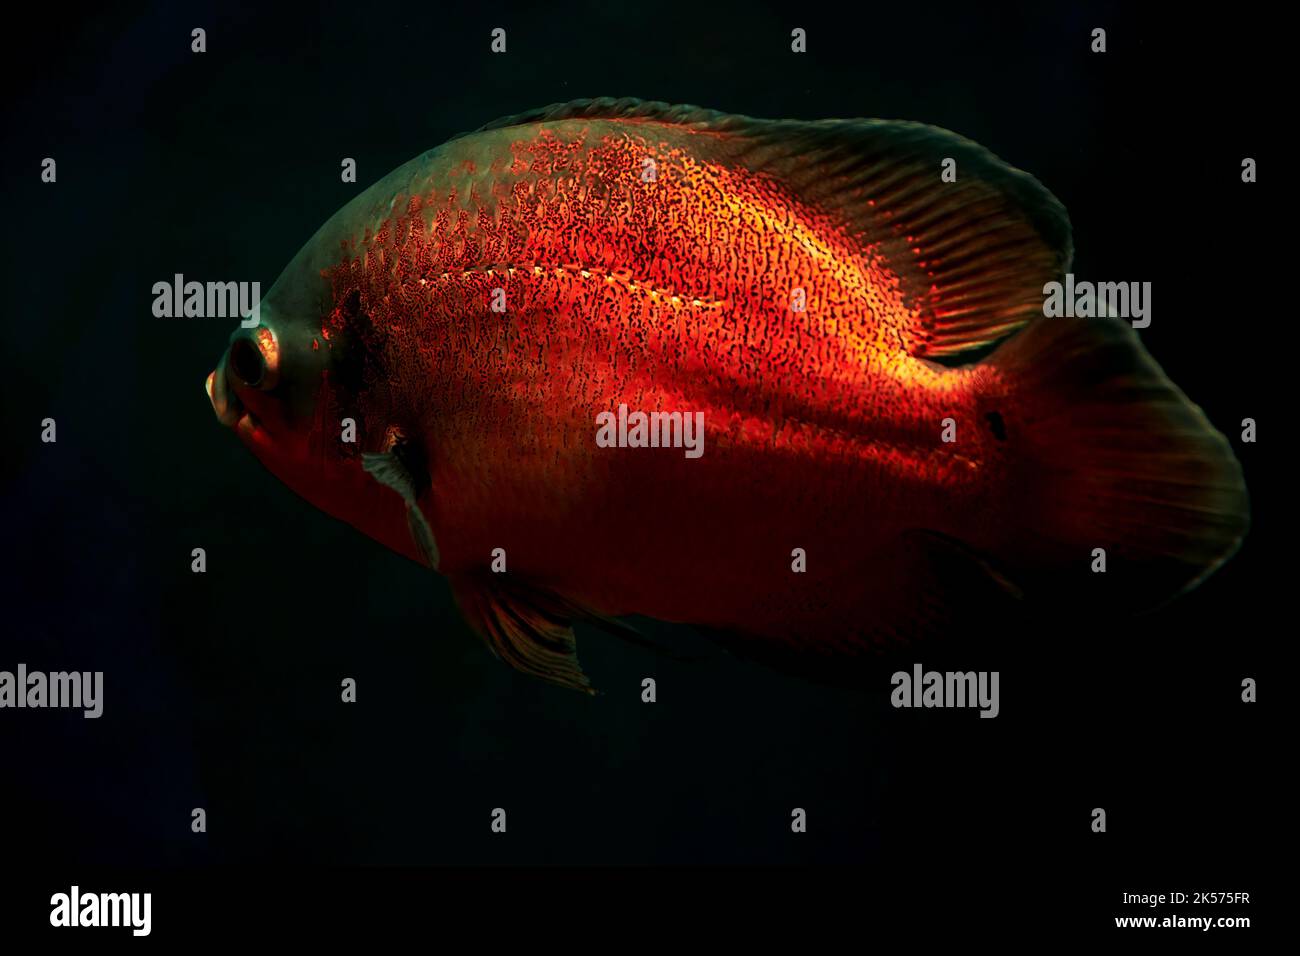 Big vivid red Astronotus fish deep in the dark ocean water. Neon lights. Animals in the wild Stock Photo